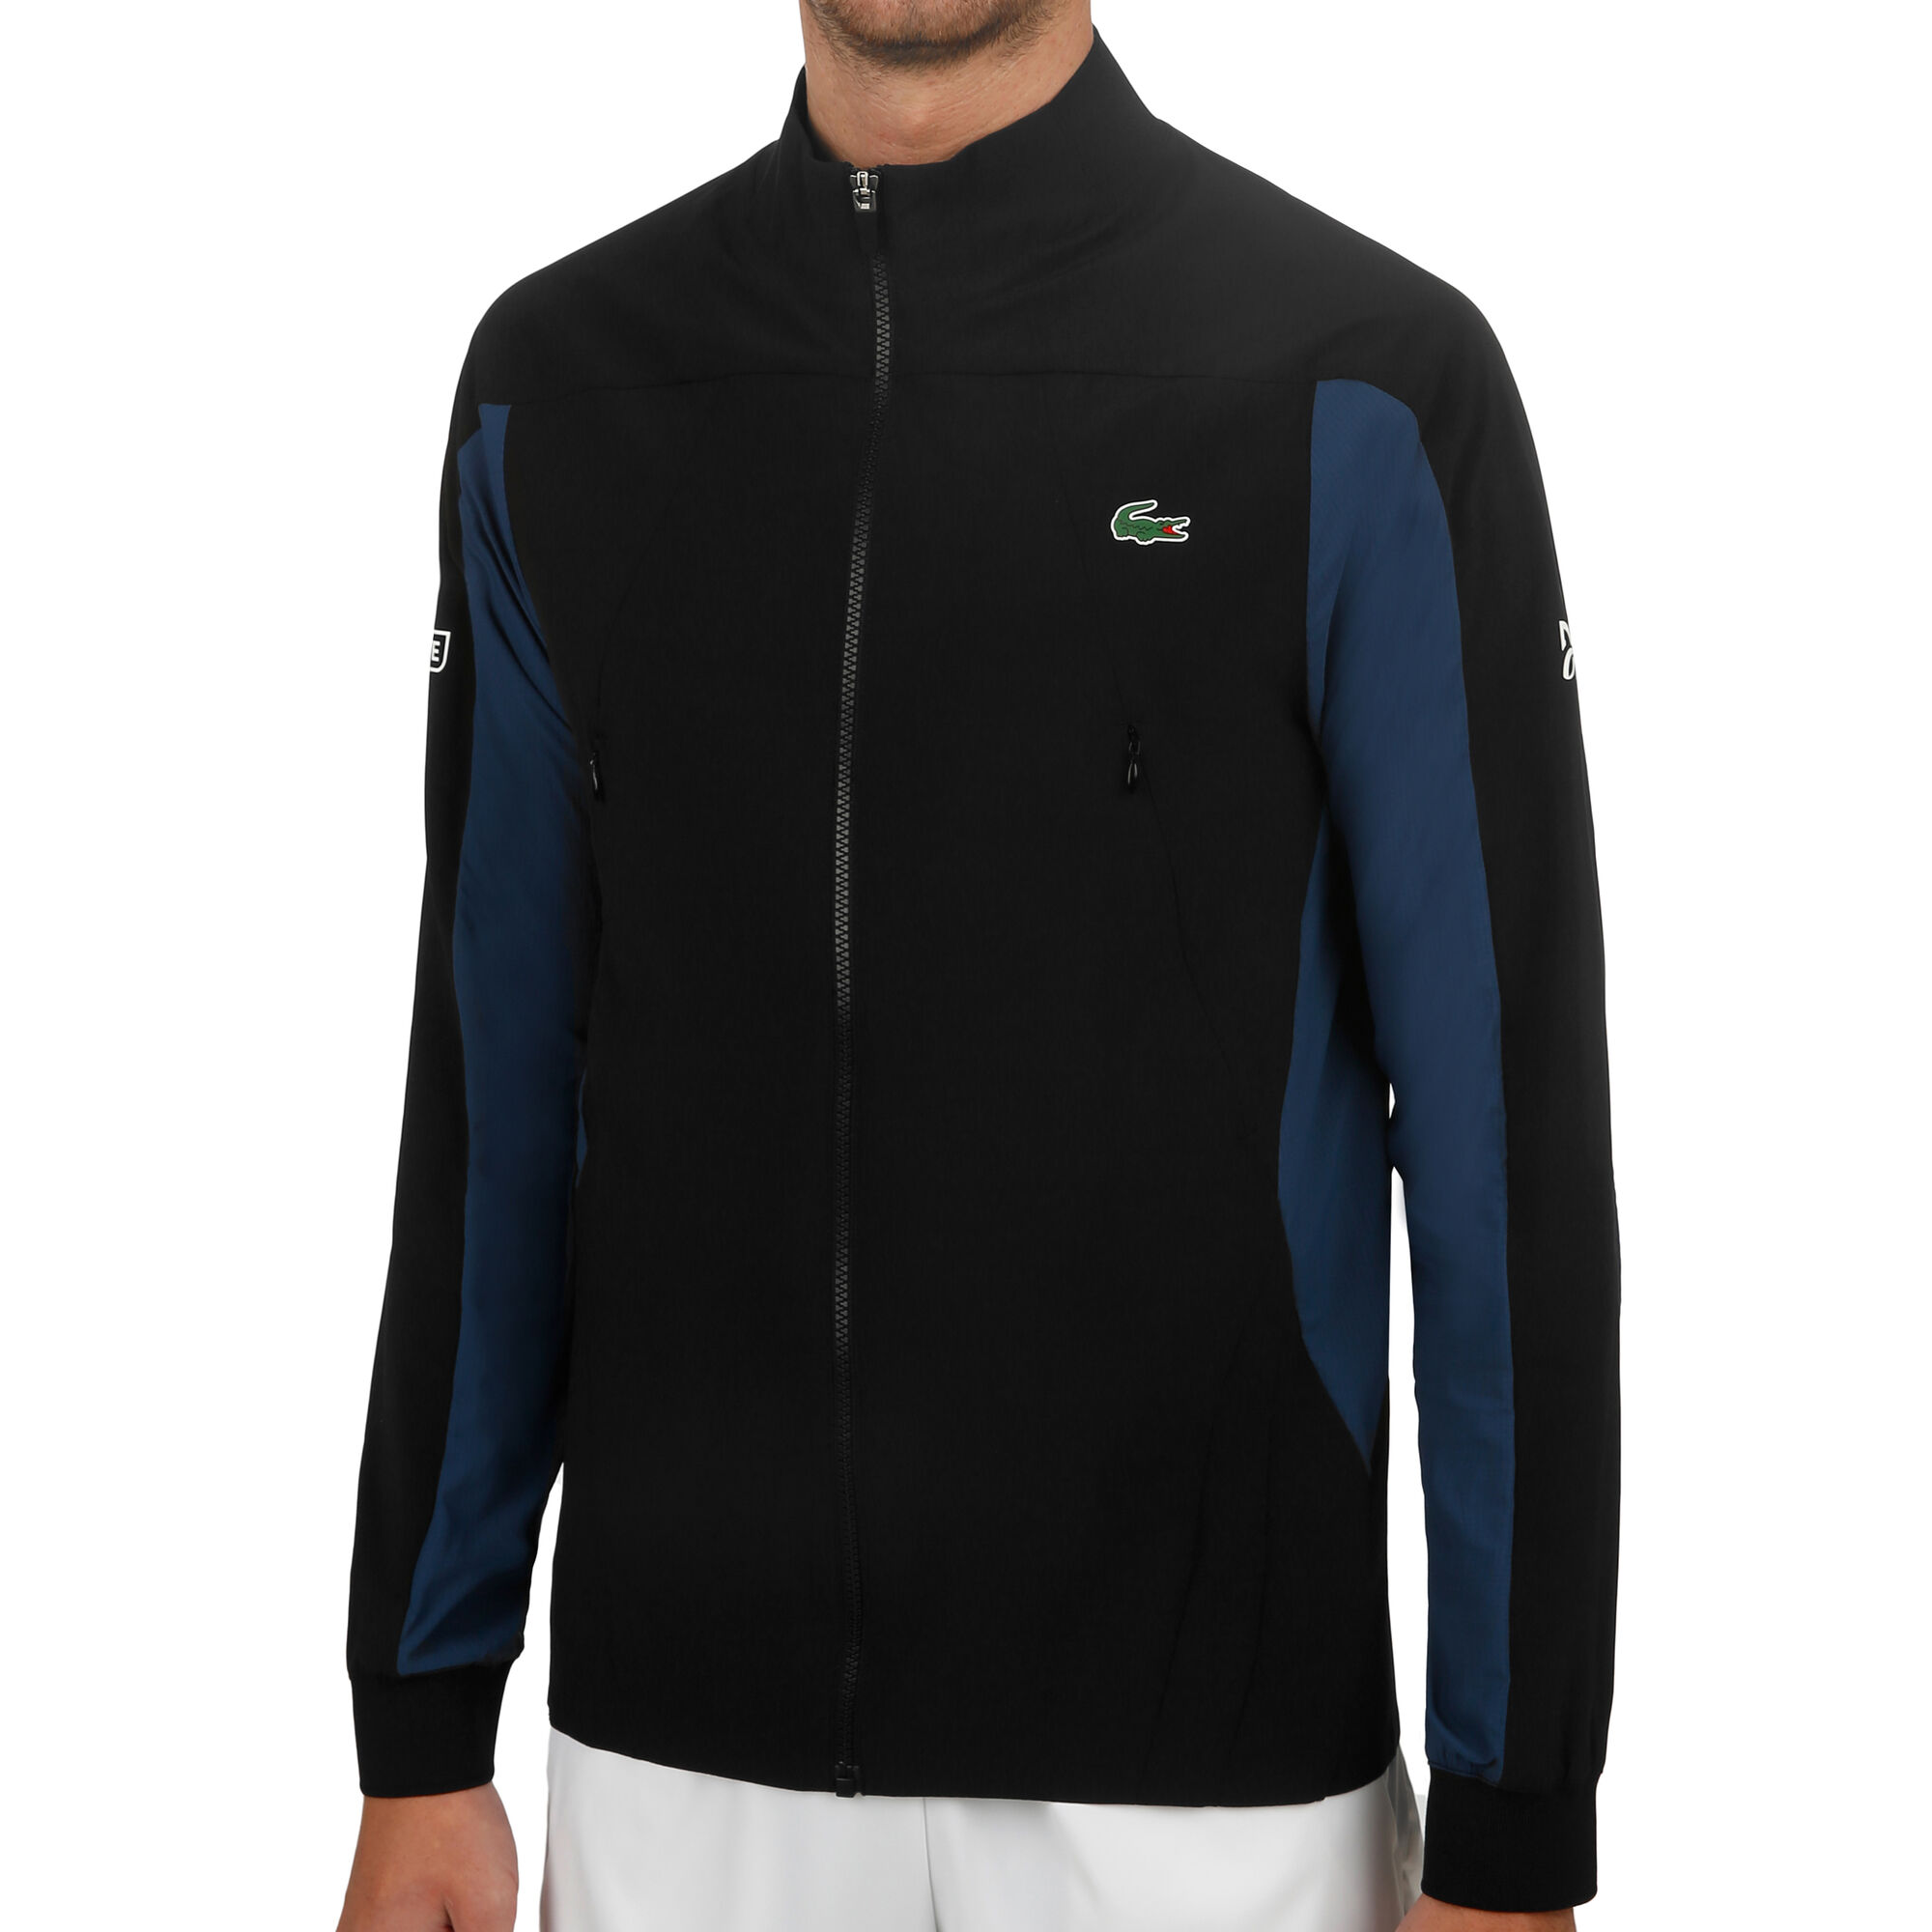 Lacoste Novak Djokovic Veste De Survêtement Hommes - Noir , Bleu Foncé  acheter en ligne | Tennis-Point